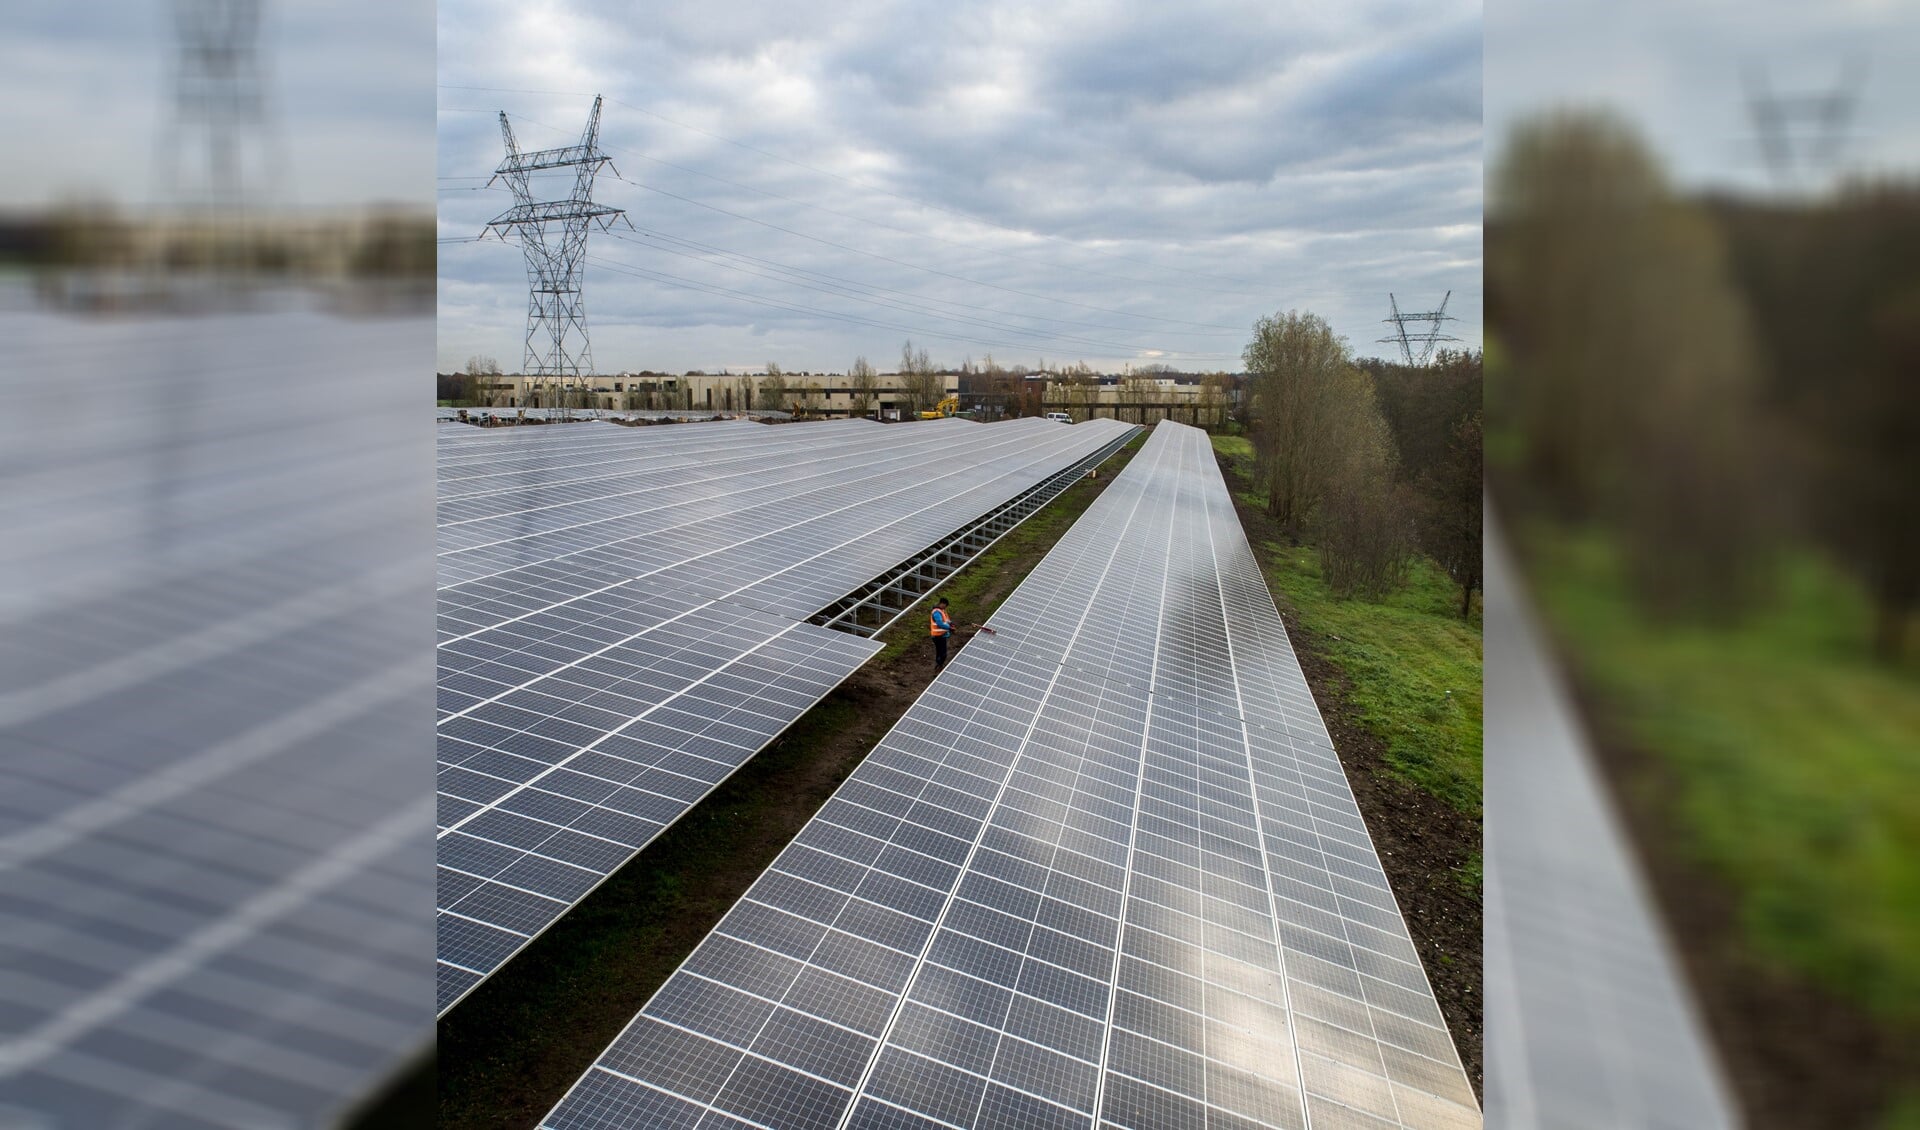 Zonnepark De Boomgaard in ’s-Graveland is recent gerealiseerd door Solarfields, exploitant van zonneparken, en Dunnenbel, de ontwikkelaar van bedrijventerrein De Boomgaard. 